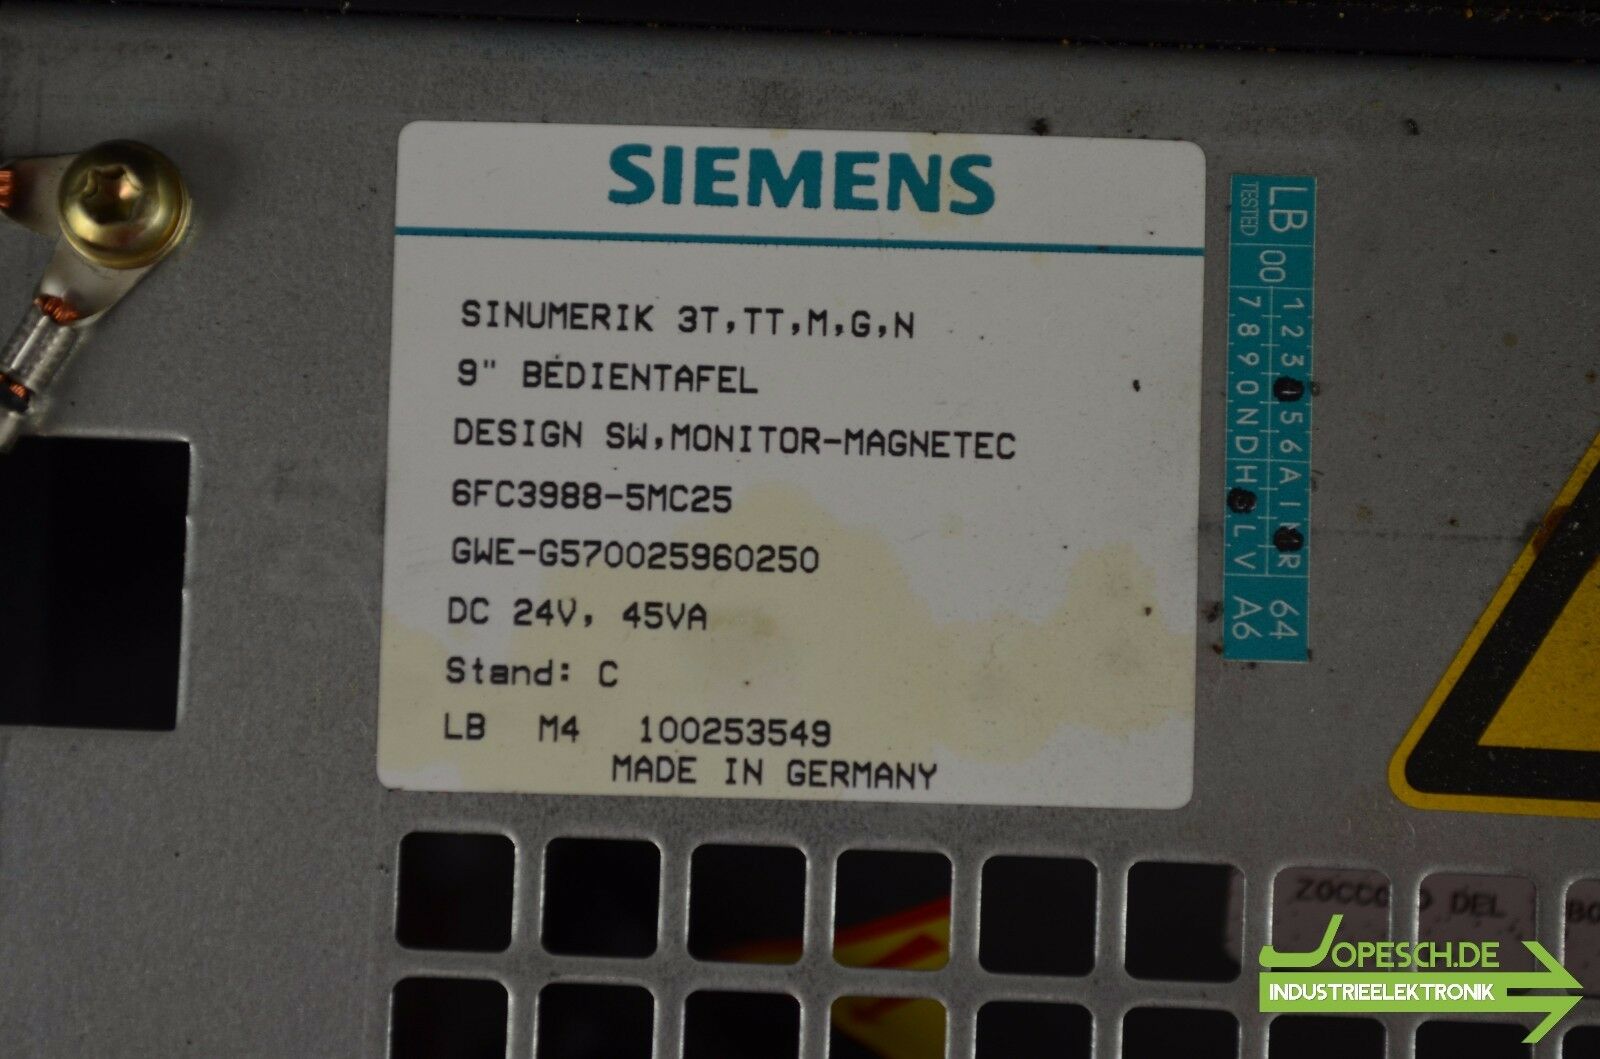 Siemens sinumerik 3T,TT,M,G,N 9'' Bedientafel 6FC3988-5MC25